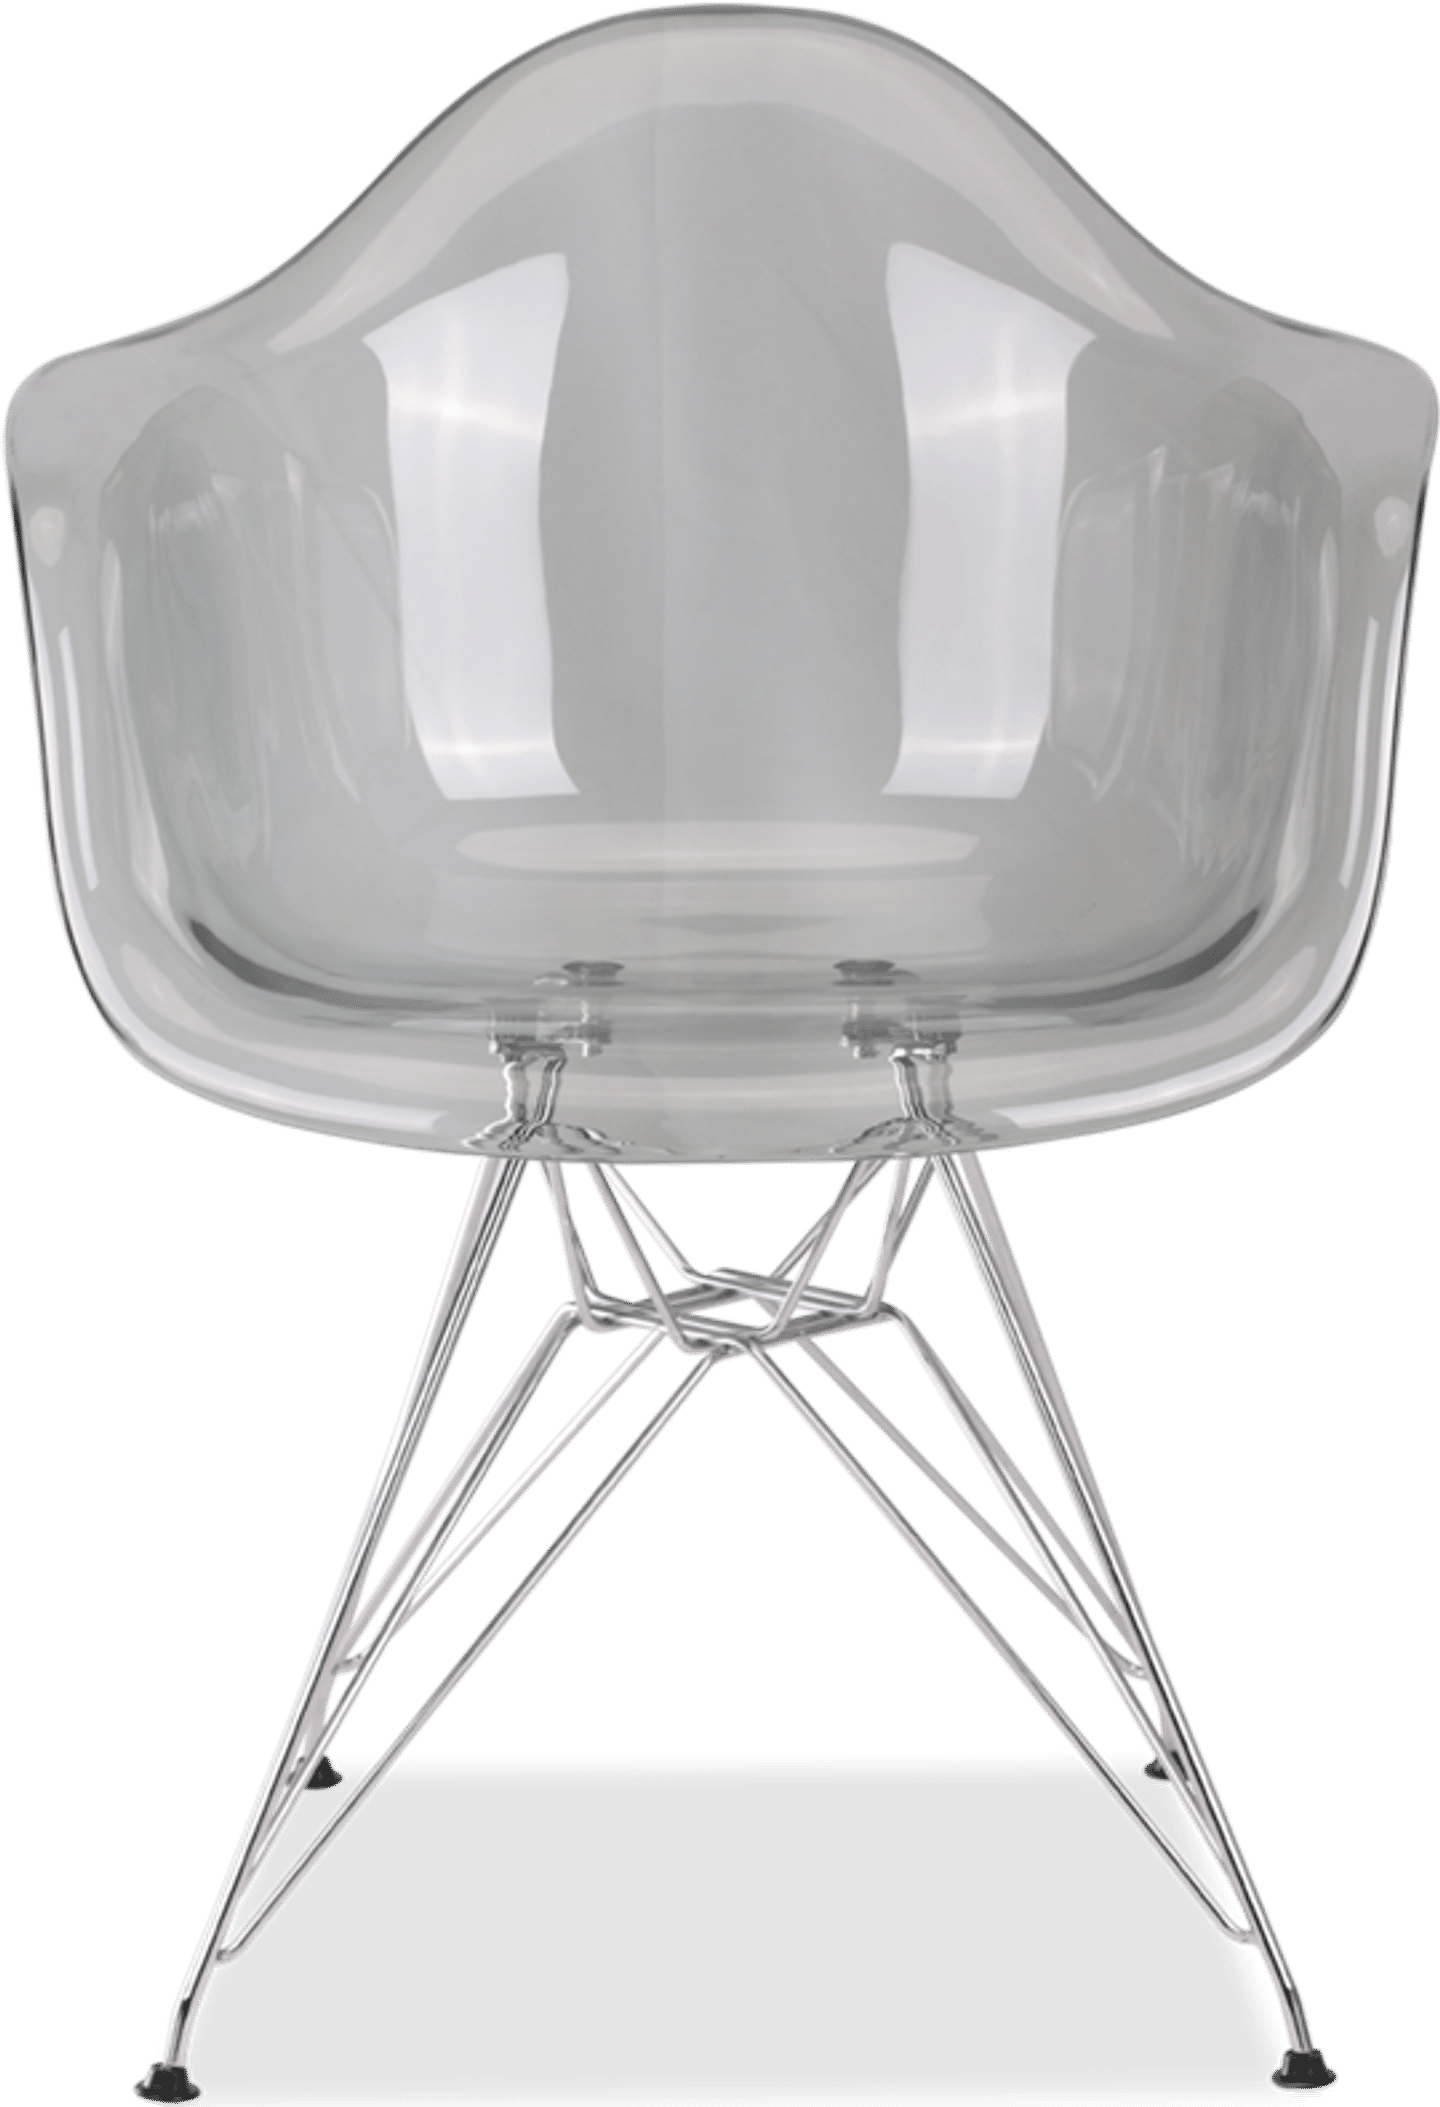 Gjennomsiktig stol i DAR-stil Grey Transparent image.